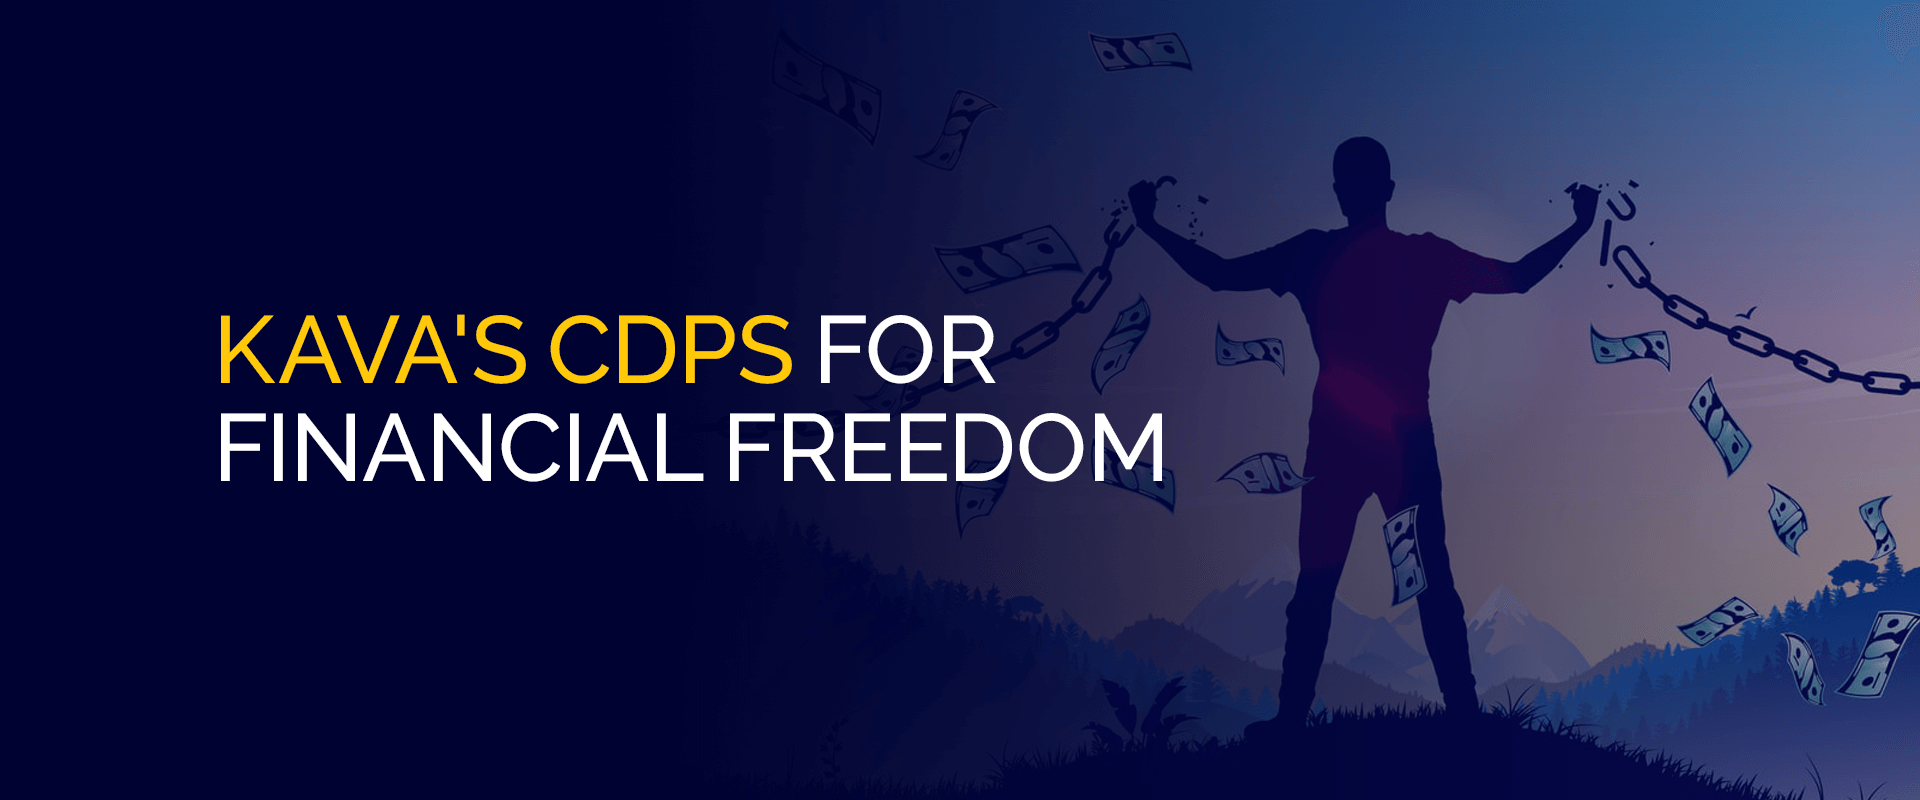 CDP Kava untuk Kebebasan Finansial